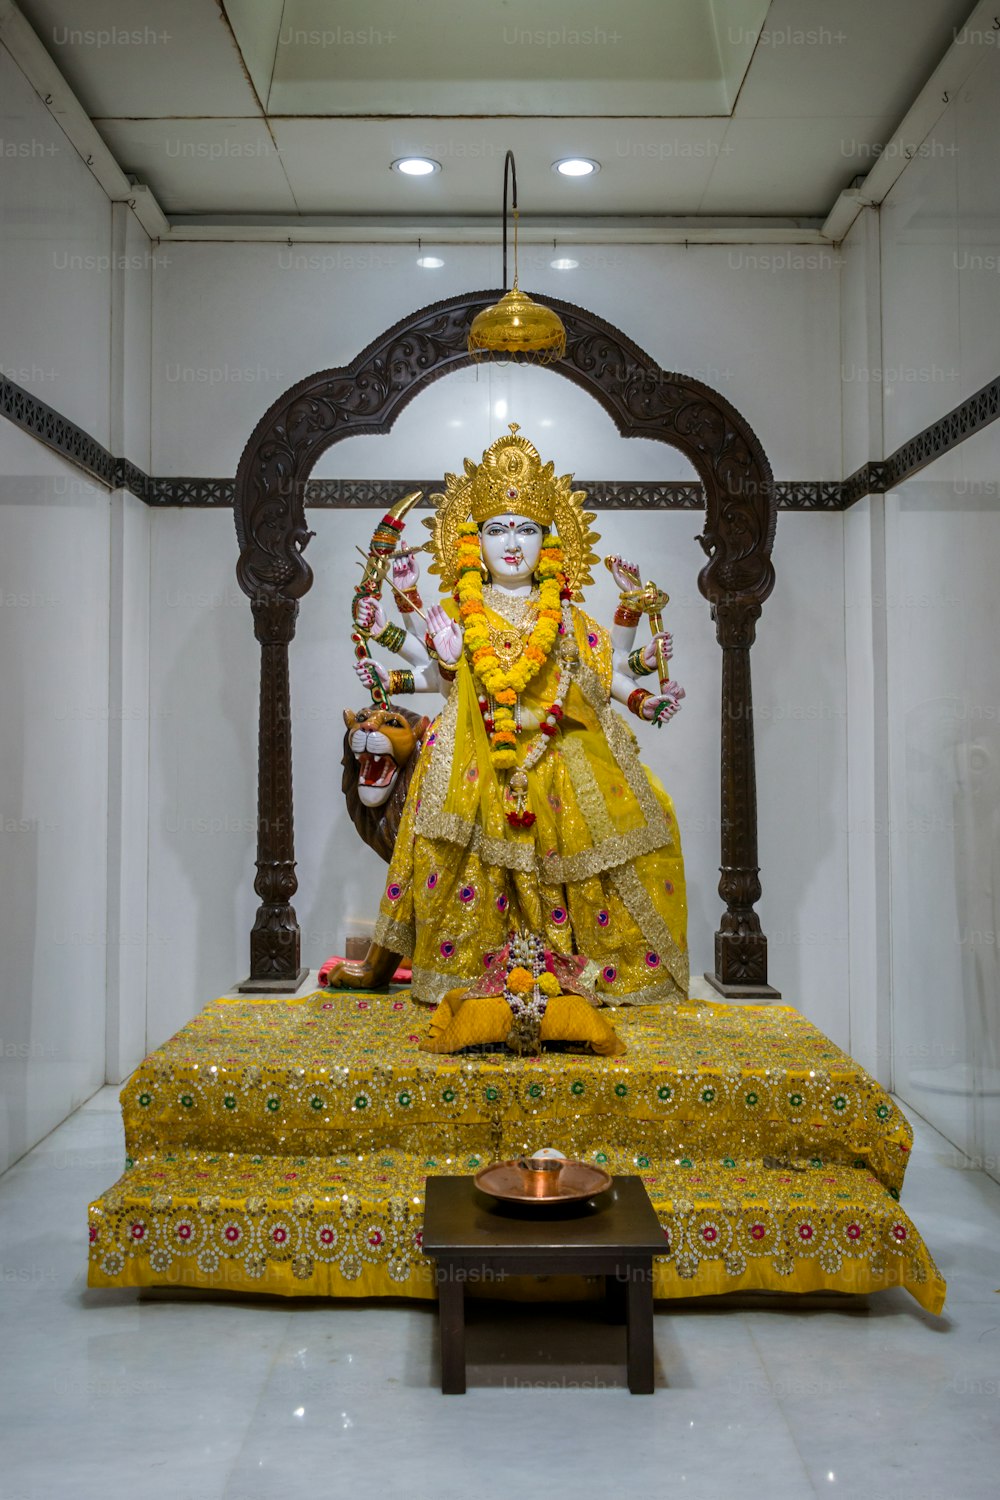 Eine Statue eines hinduistischen Gottes in einem Raum